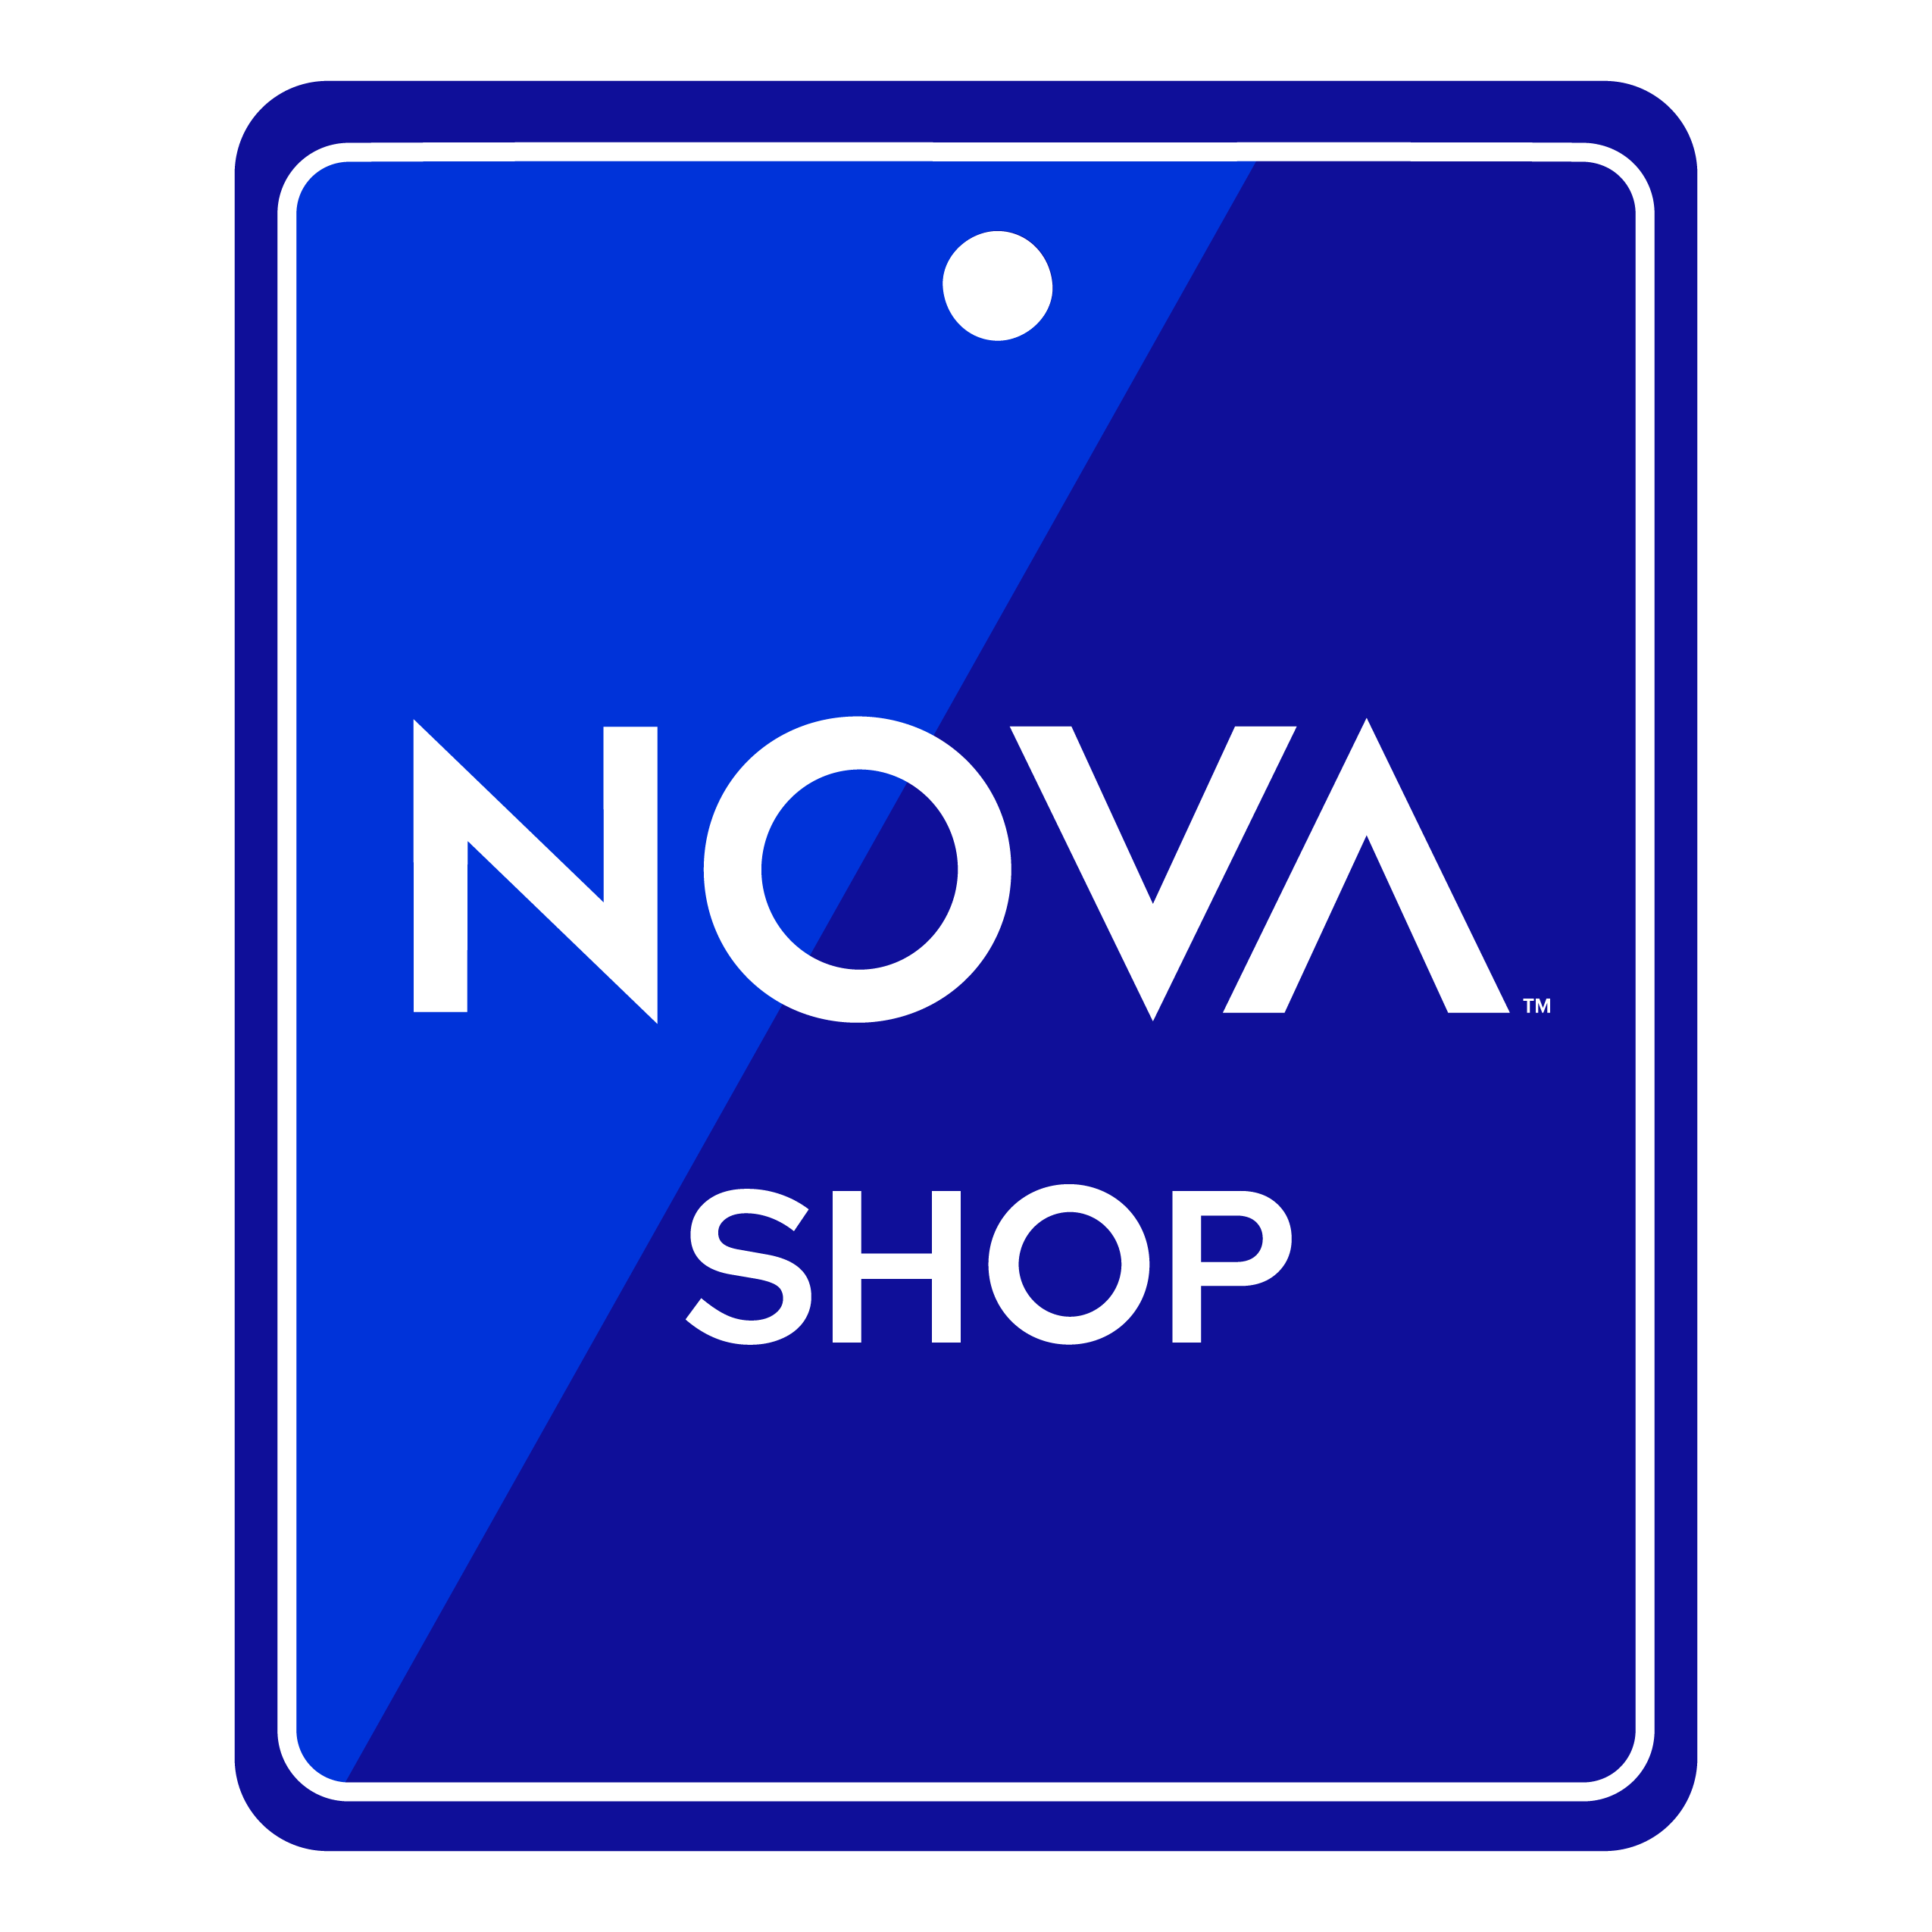 NOVA Shop